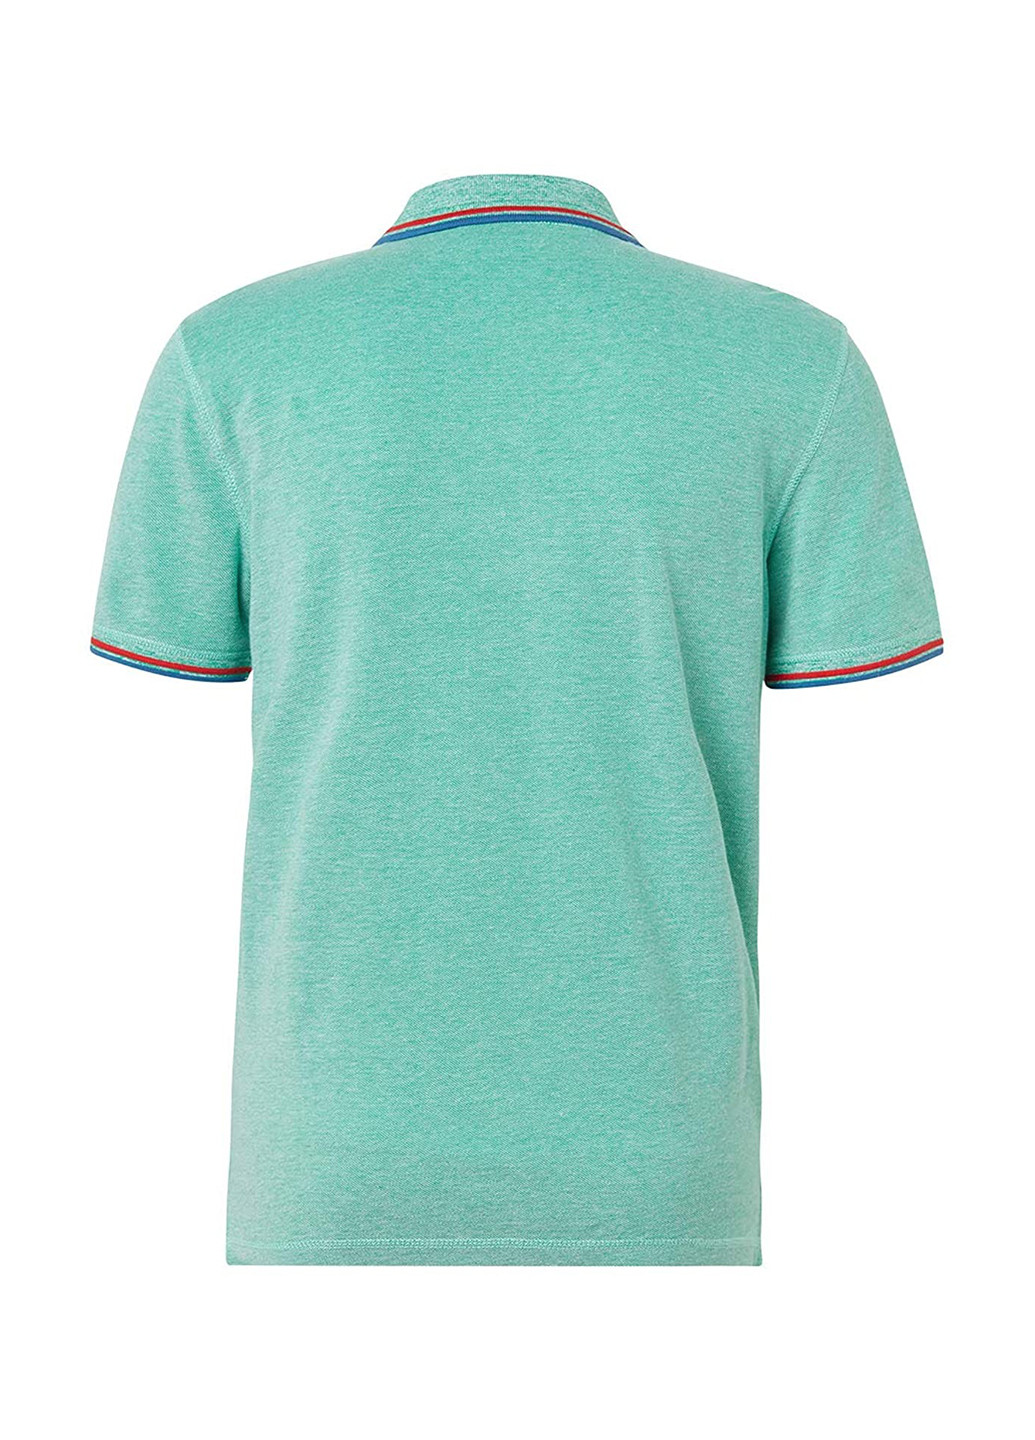 Мятная футболка-поло для мужчин Tom Tailor однотонная